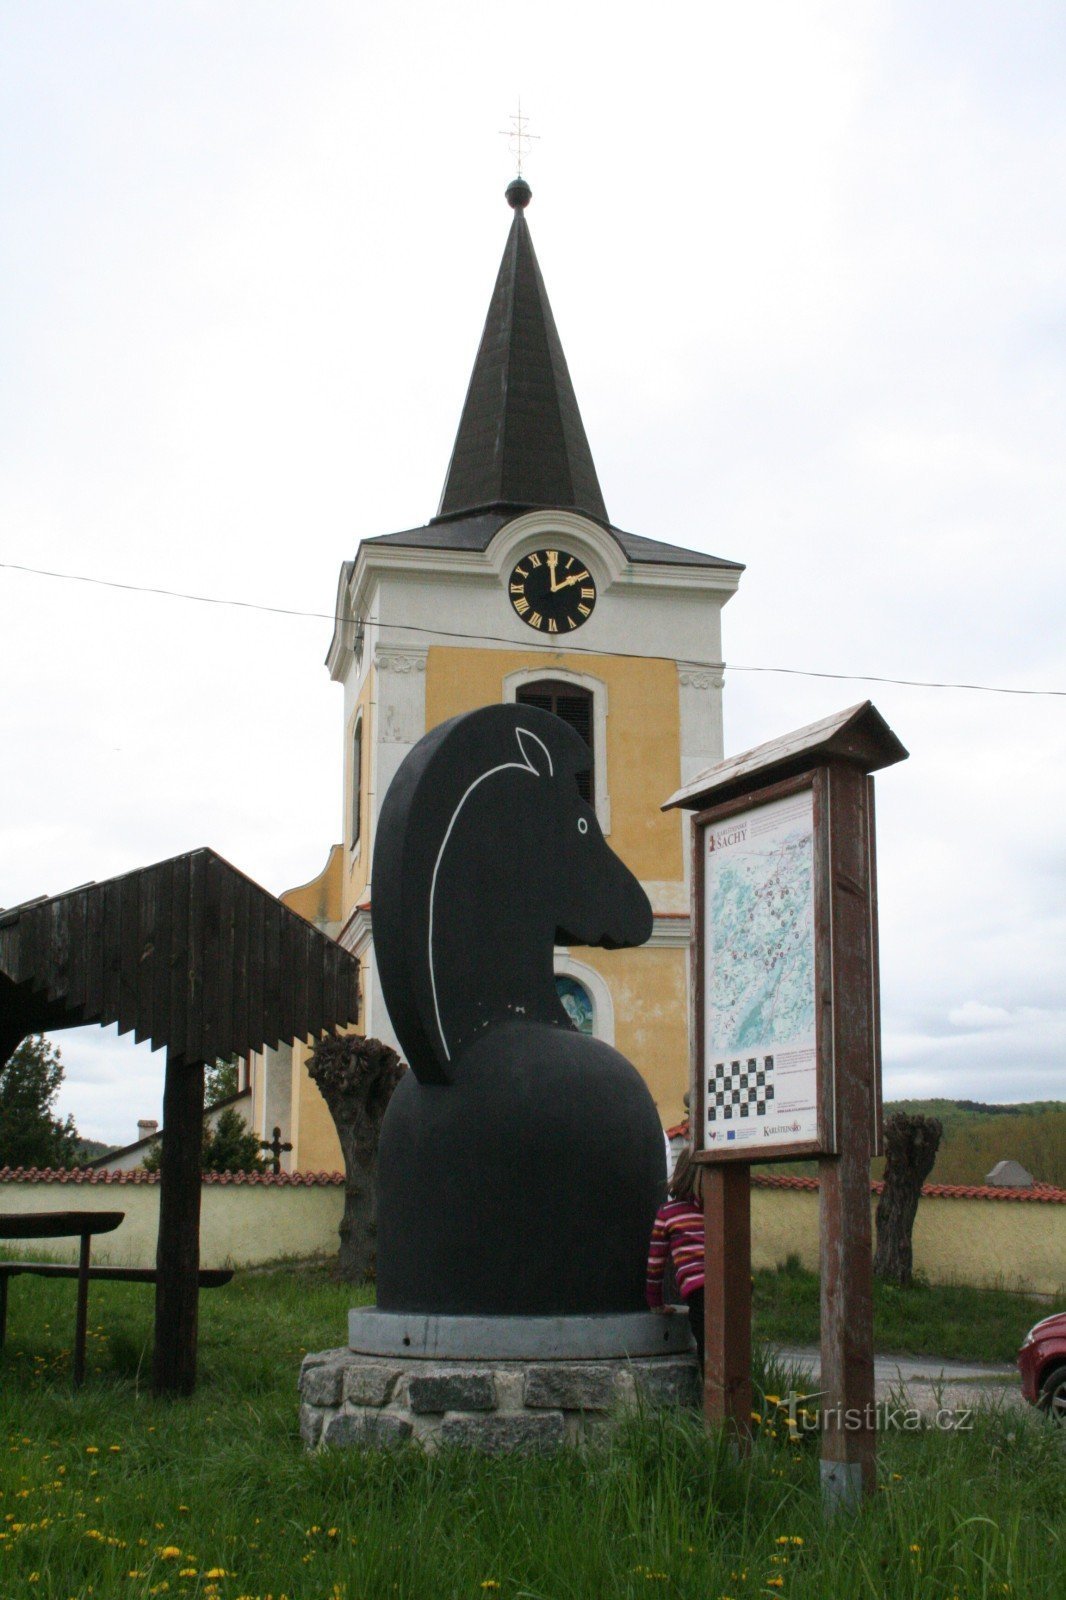 Σκάκι Karlštejnské - Μαύρο άλογο Tmaň